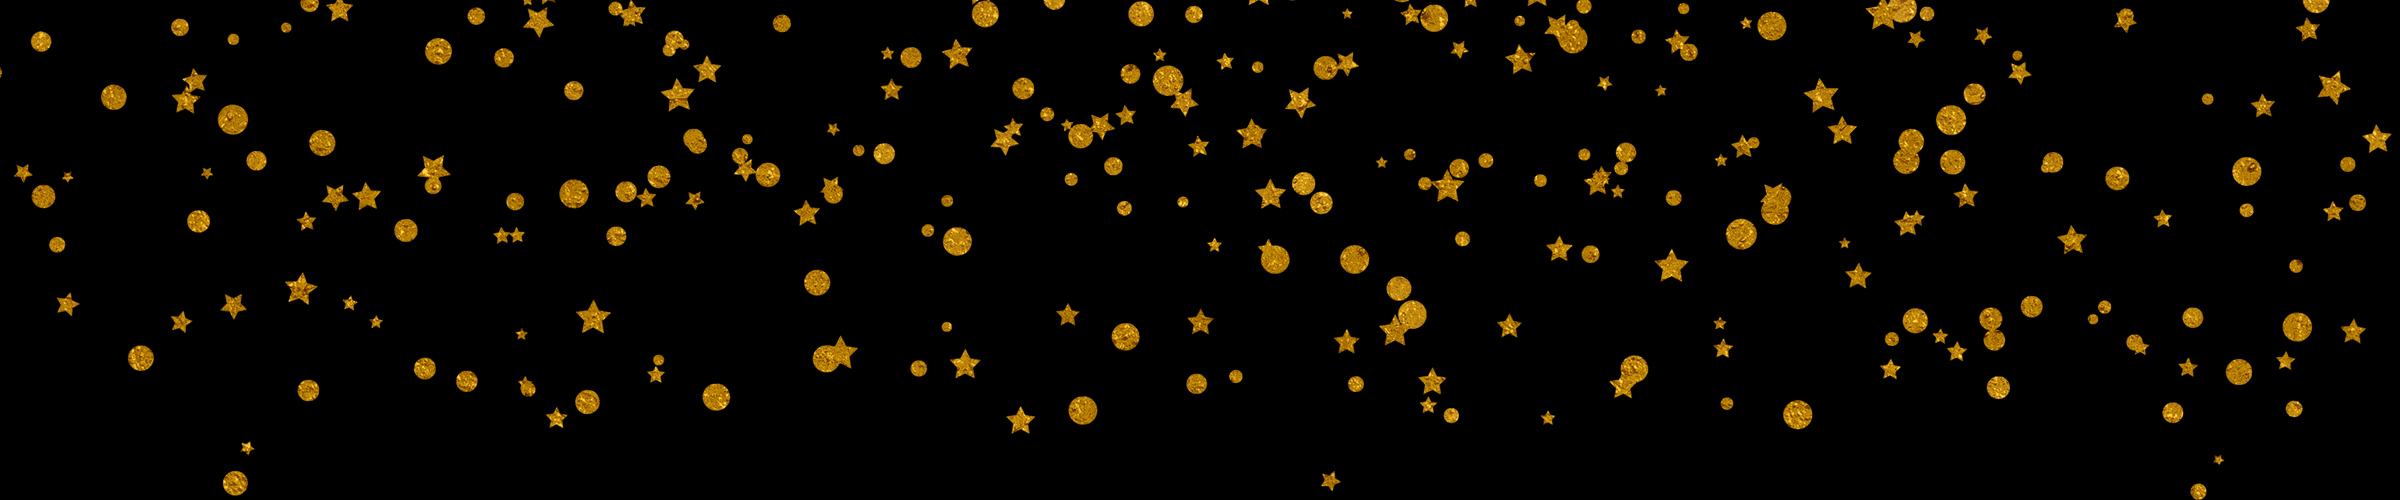 Gold Confetti Clip Art, Gold Foil Confetti Overlays 12x12